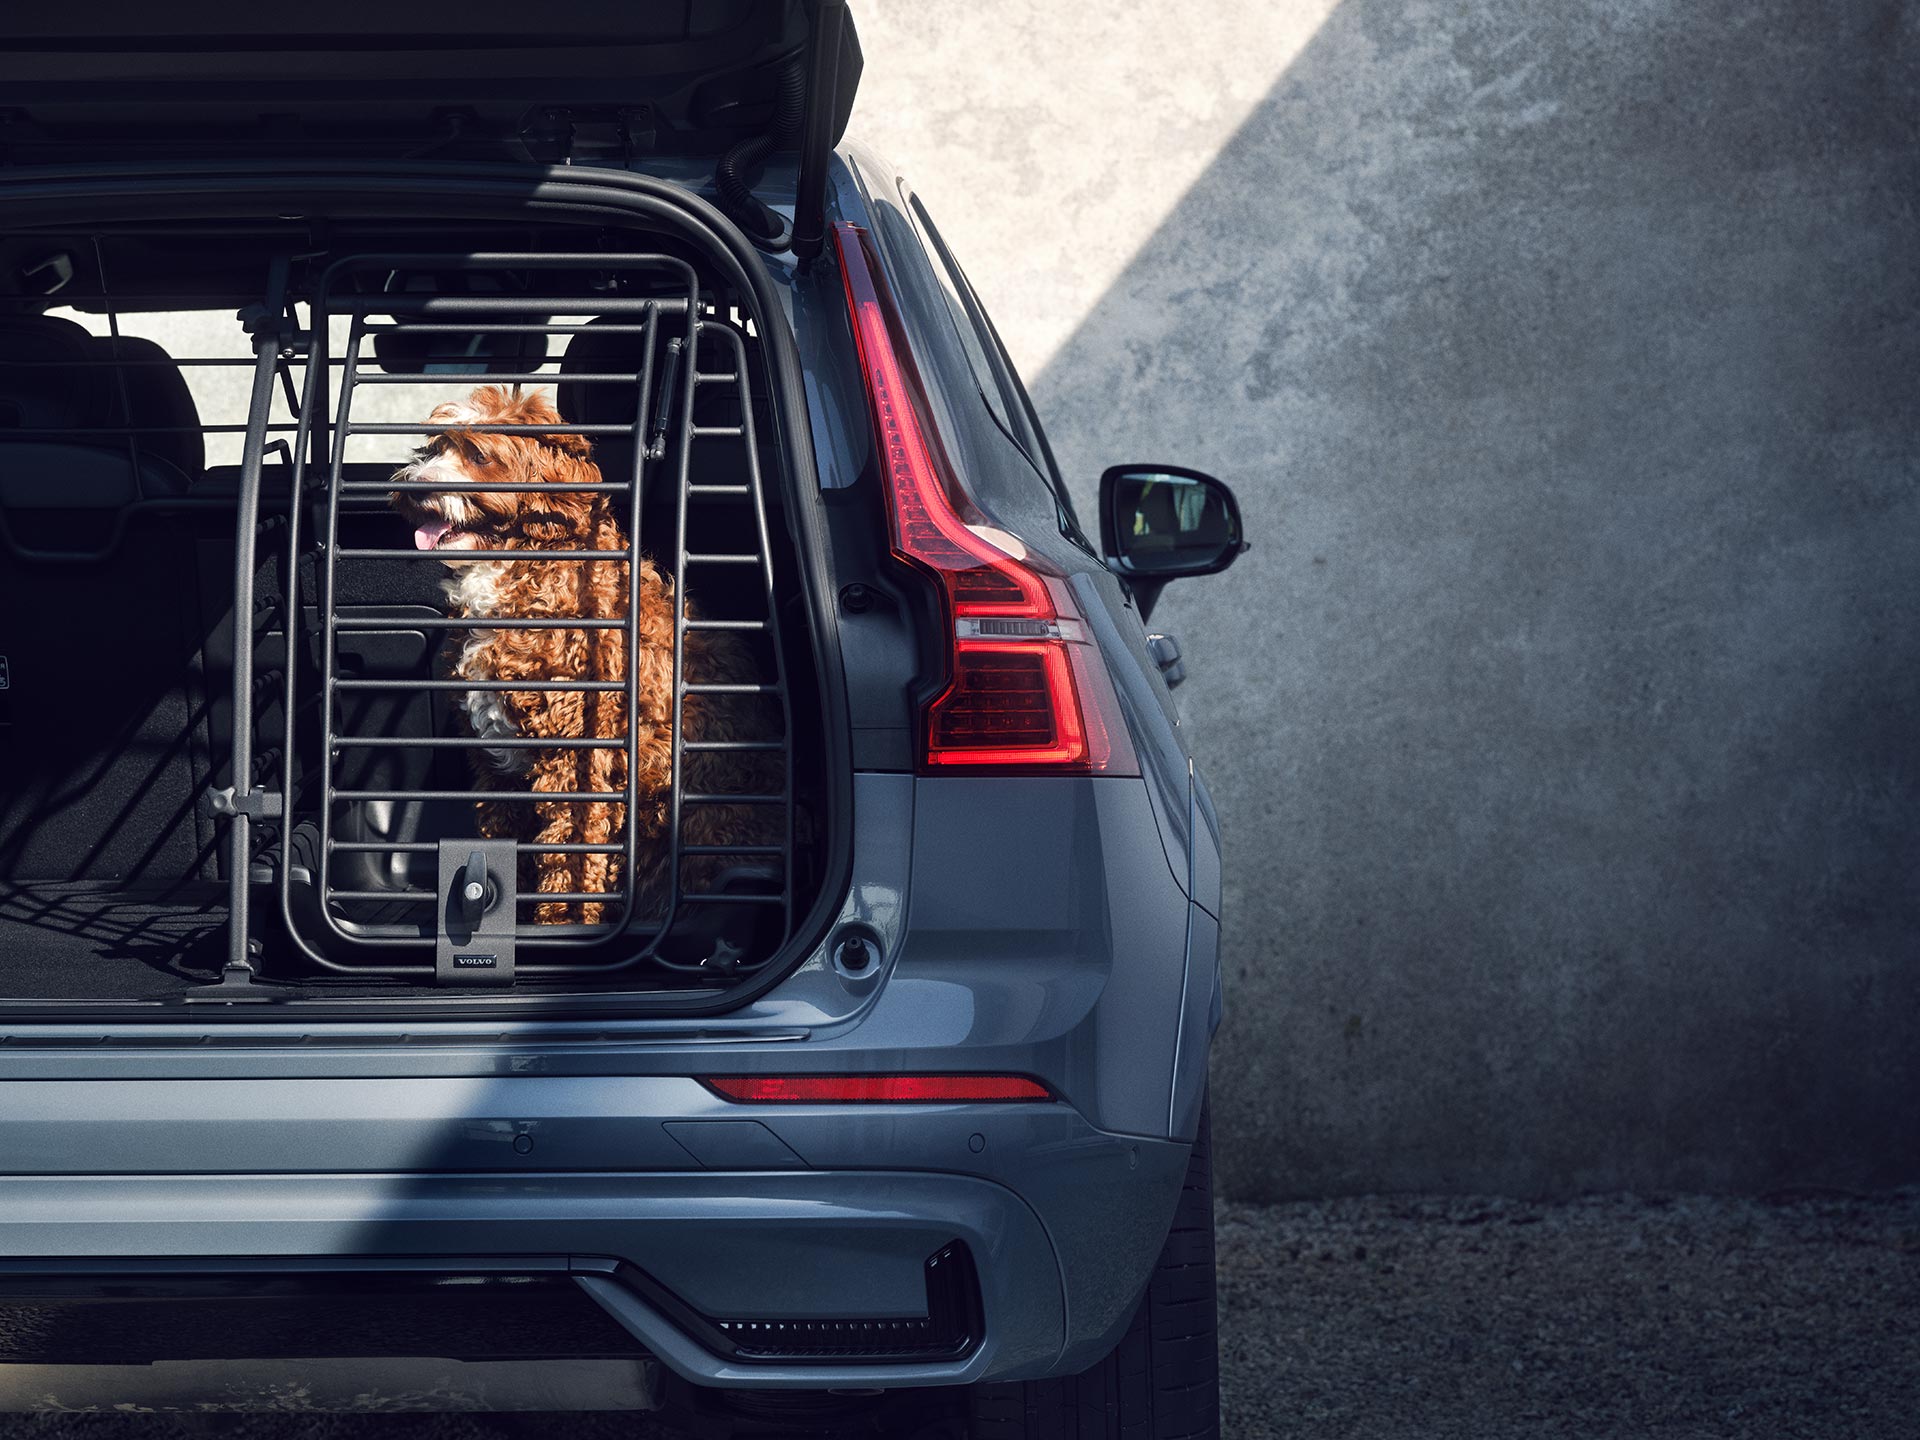 כלב יושב בכלוב מאובטח ברכב, אביזר שפותח במיוחד להבטחת הנוחות והבטיחות של בעלי חיים הנוסעים ברכב של וולוו.